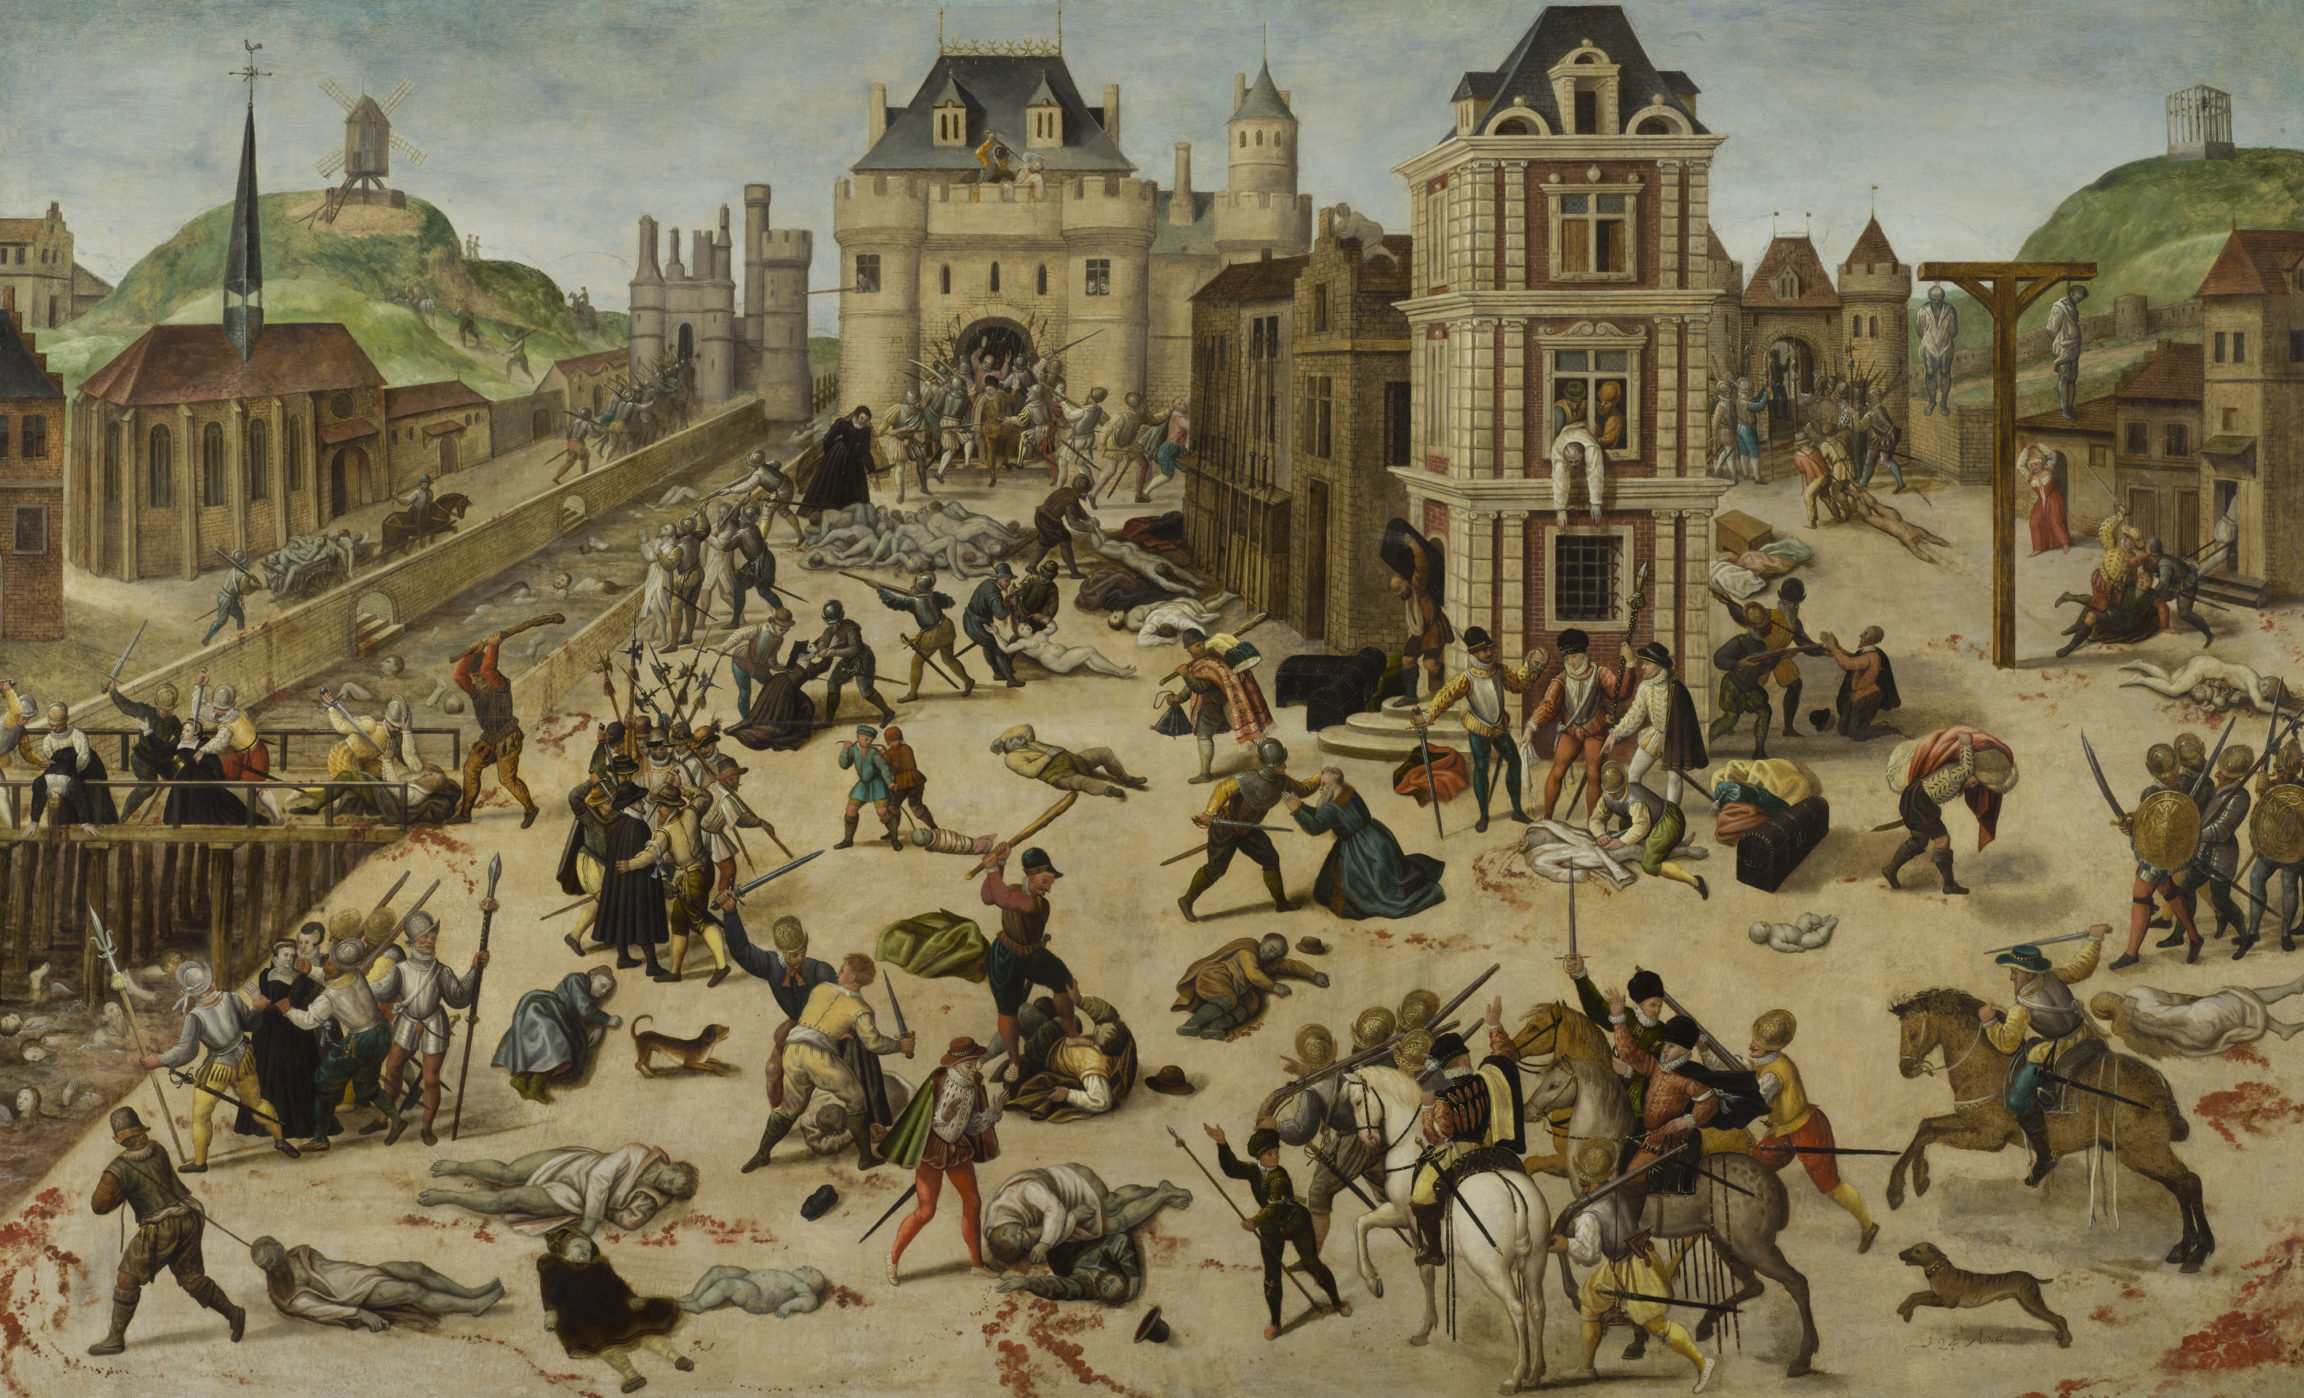 François Dubois, Le massacre de la Saint-Barthélemy<br>(The Saint Bartholomew’s Day Massacre), vers 1572-1584